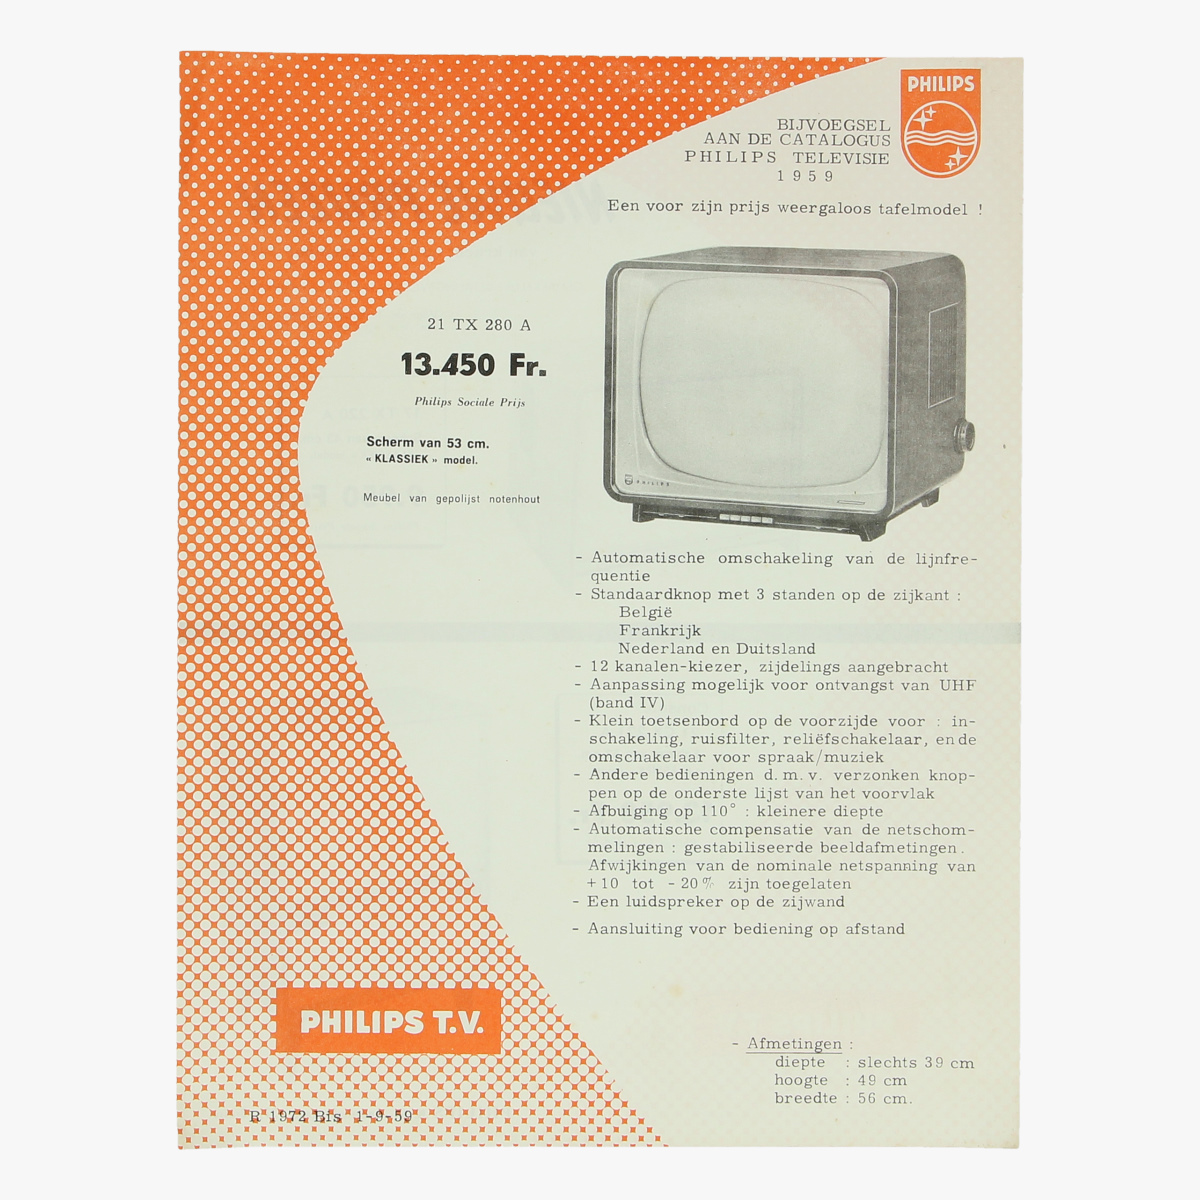 Afbeeldingen van reclame folder philips televisie 1959